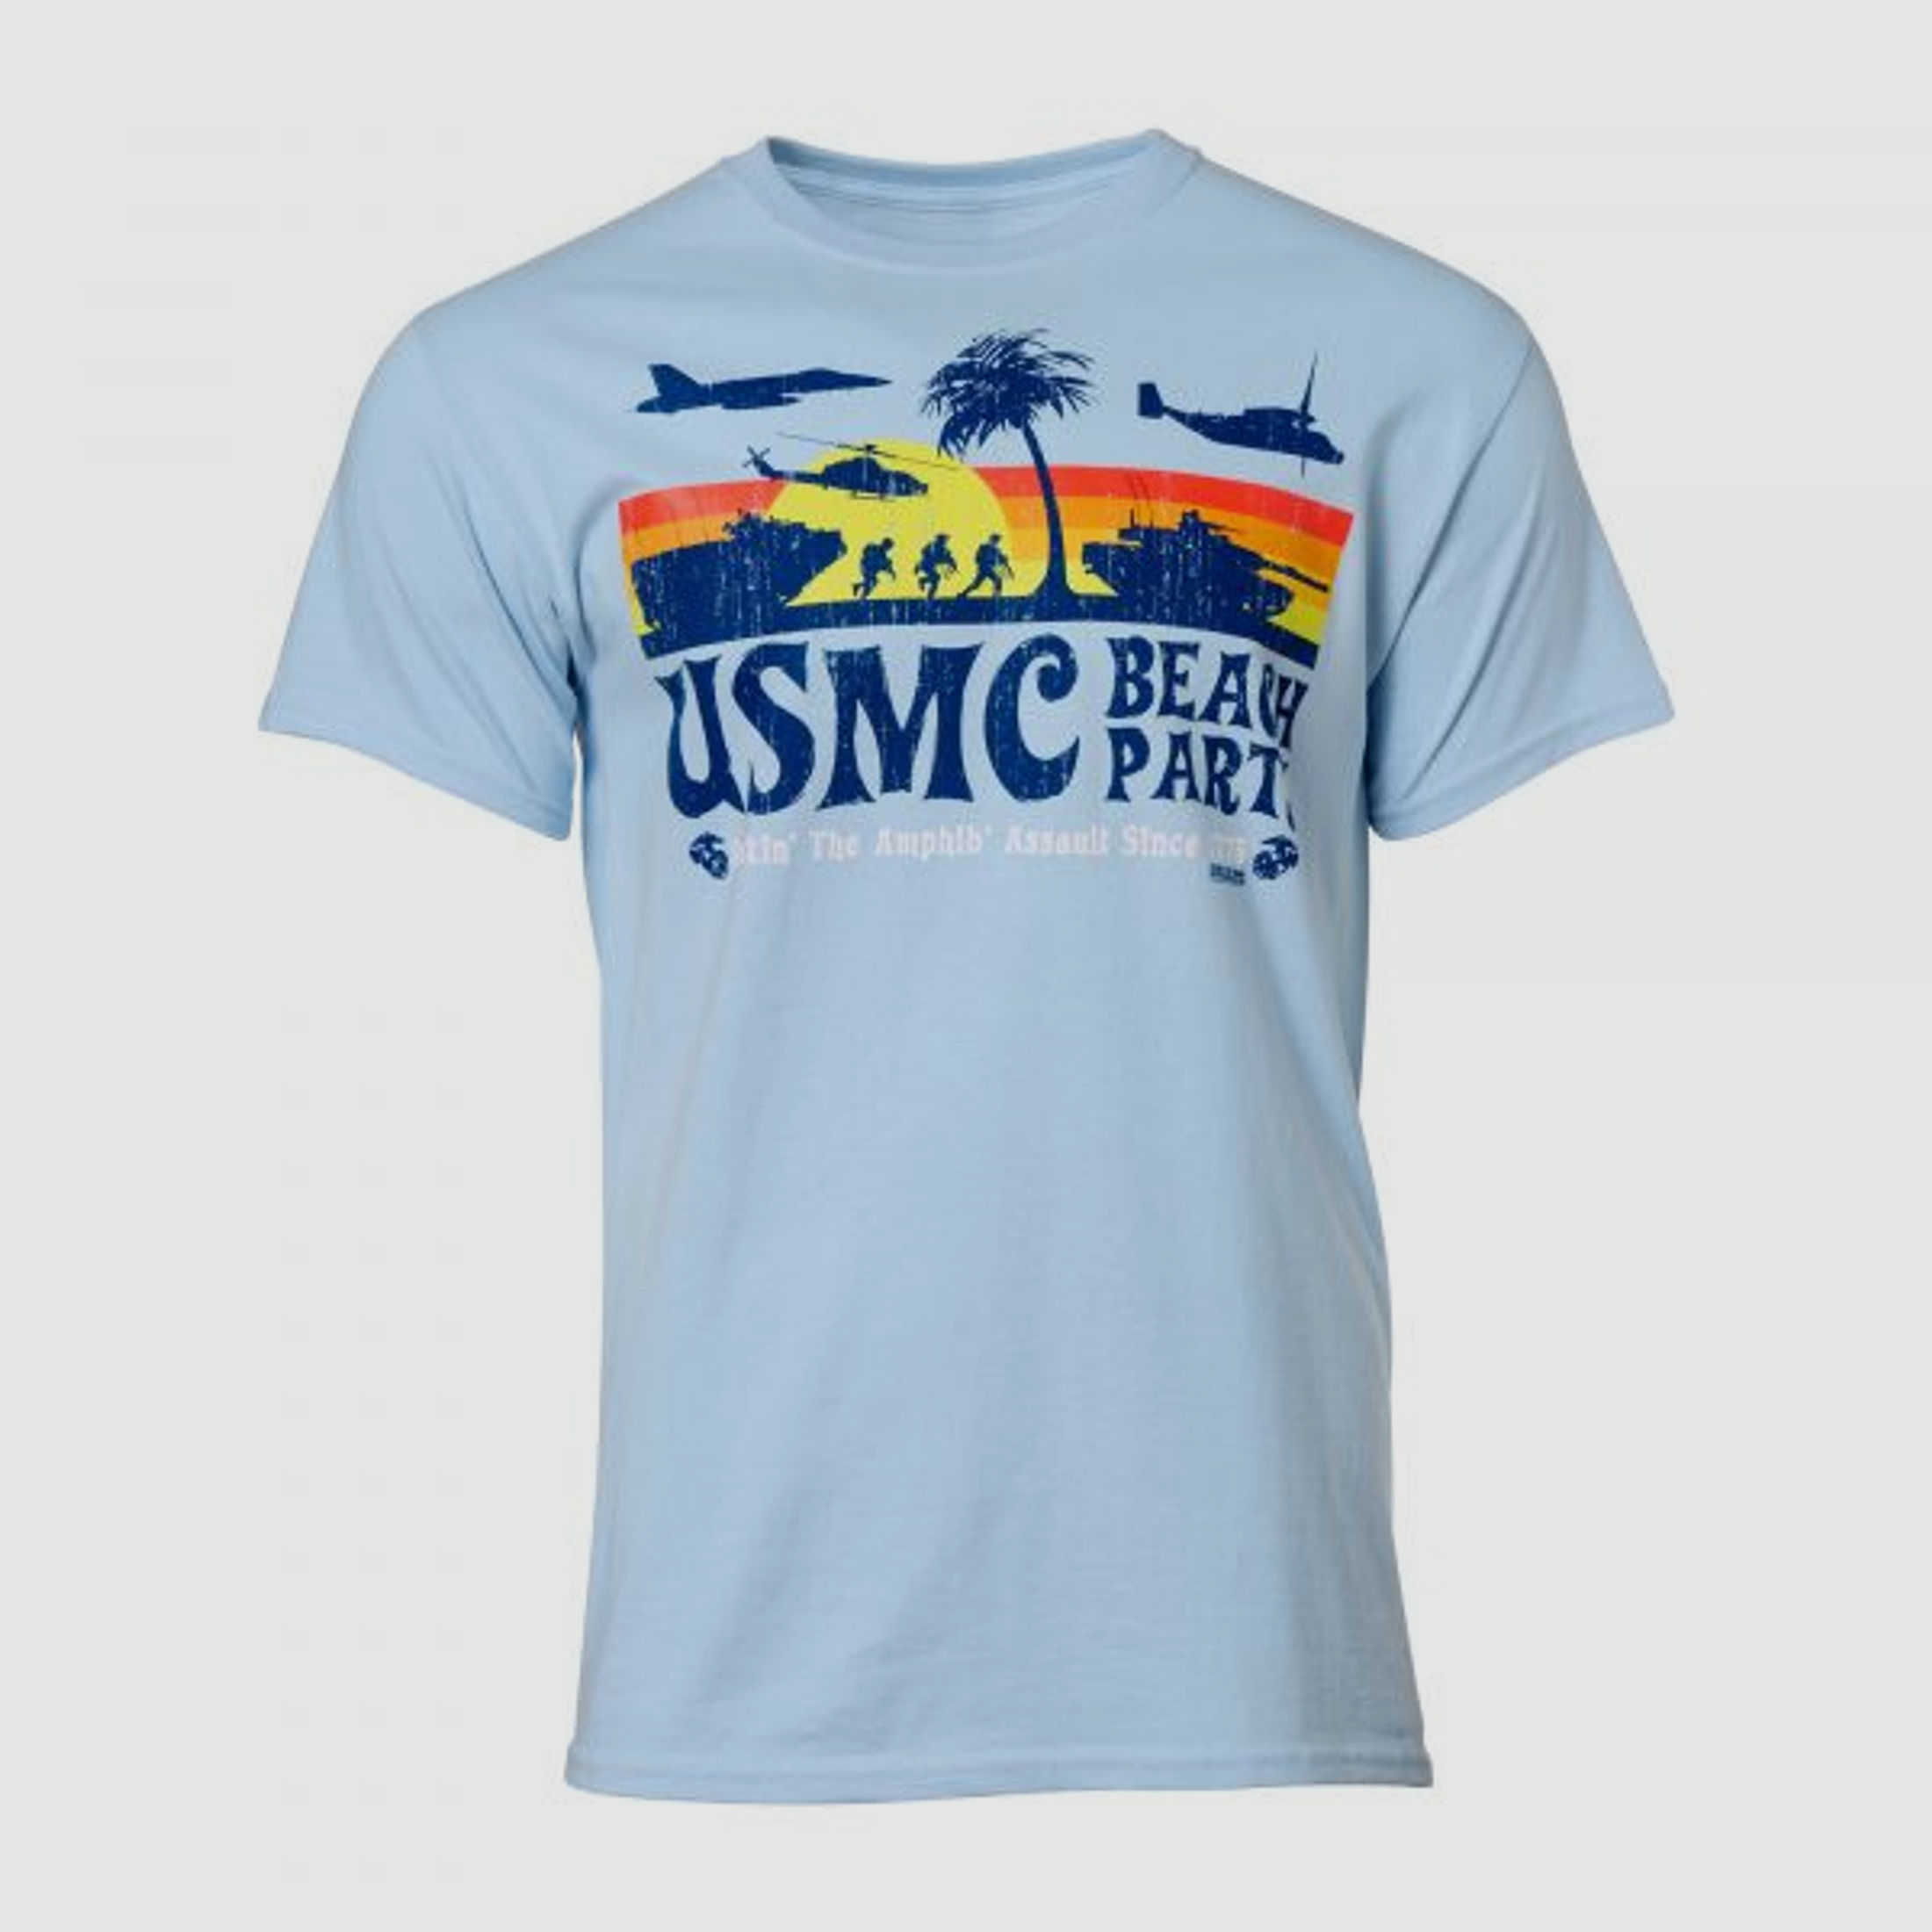 7.62 Design 7.62 Design T-Shirt USMC Beach Party sky blue